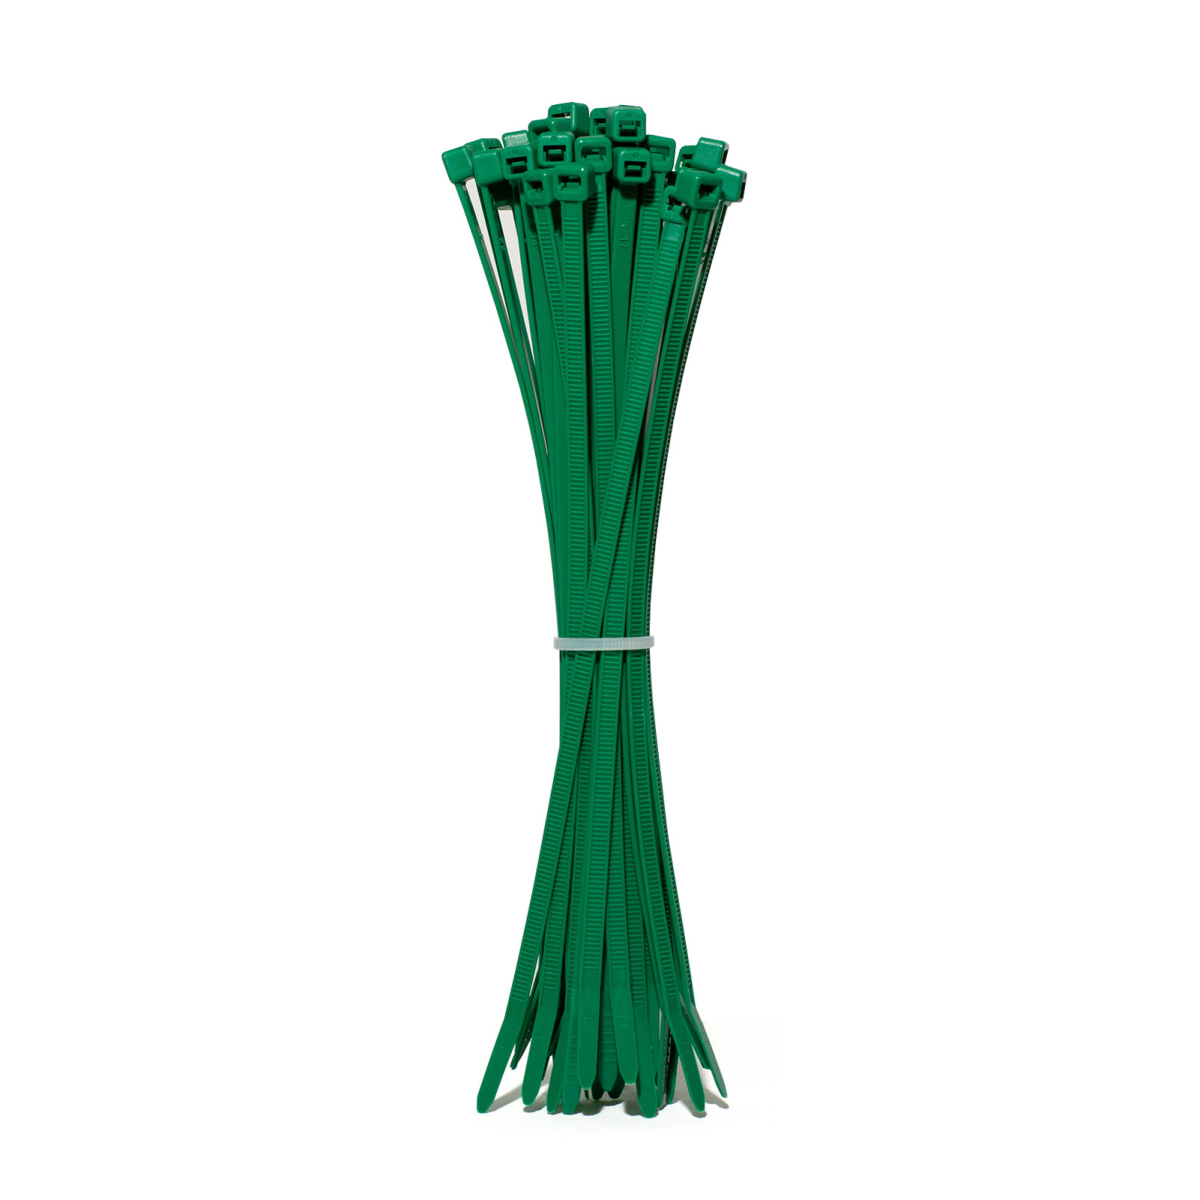 Kabelbinder 100 x 2.5 mm Grün 100 Stück